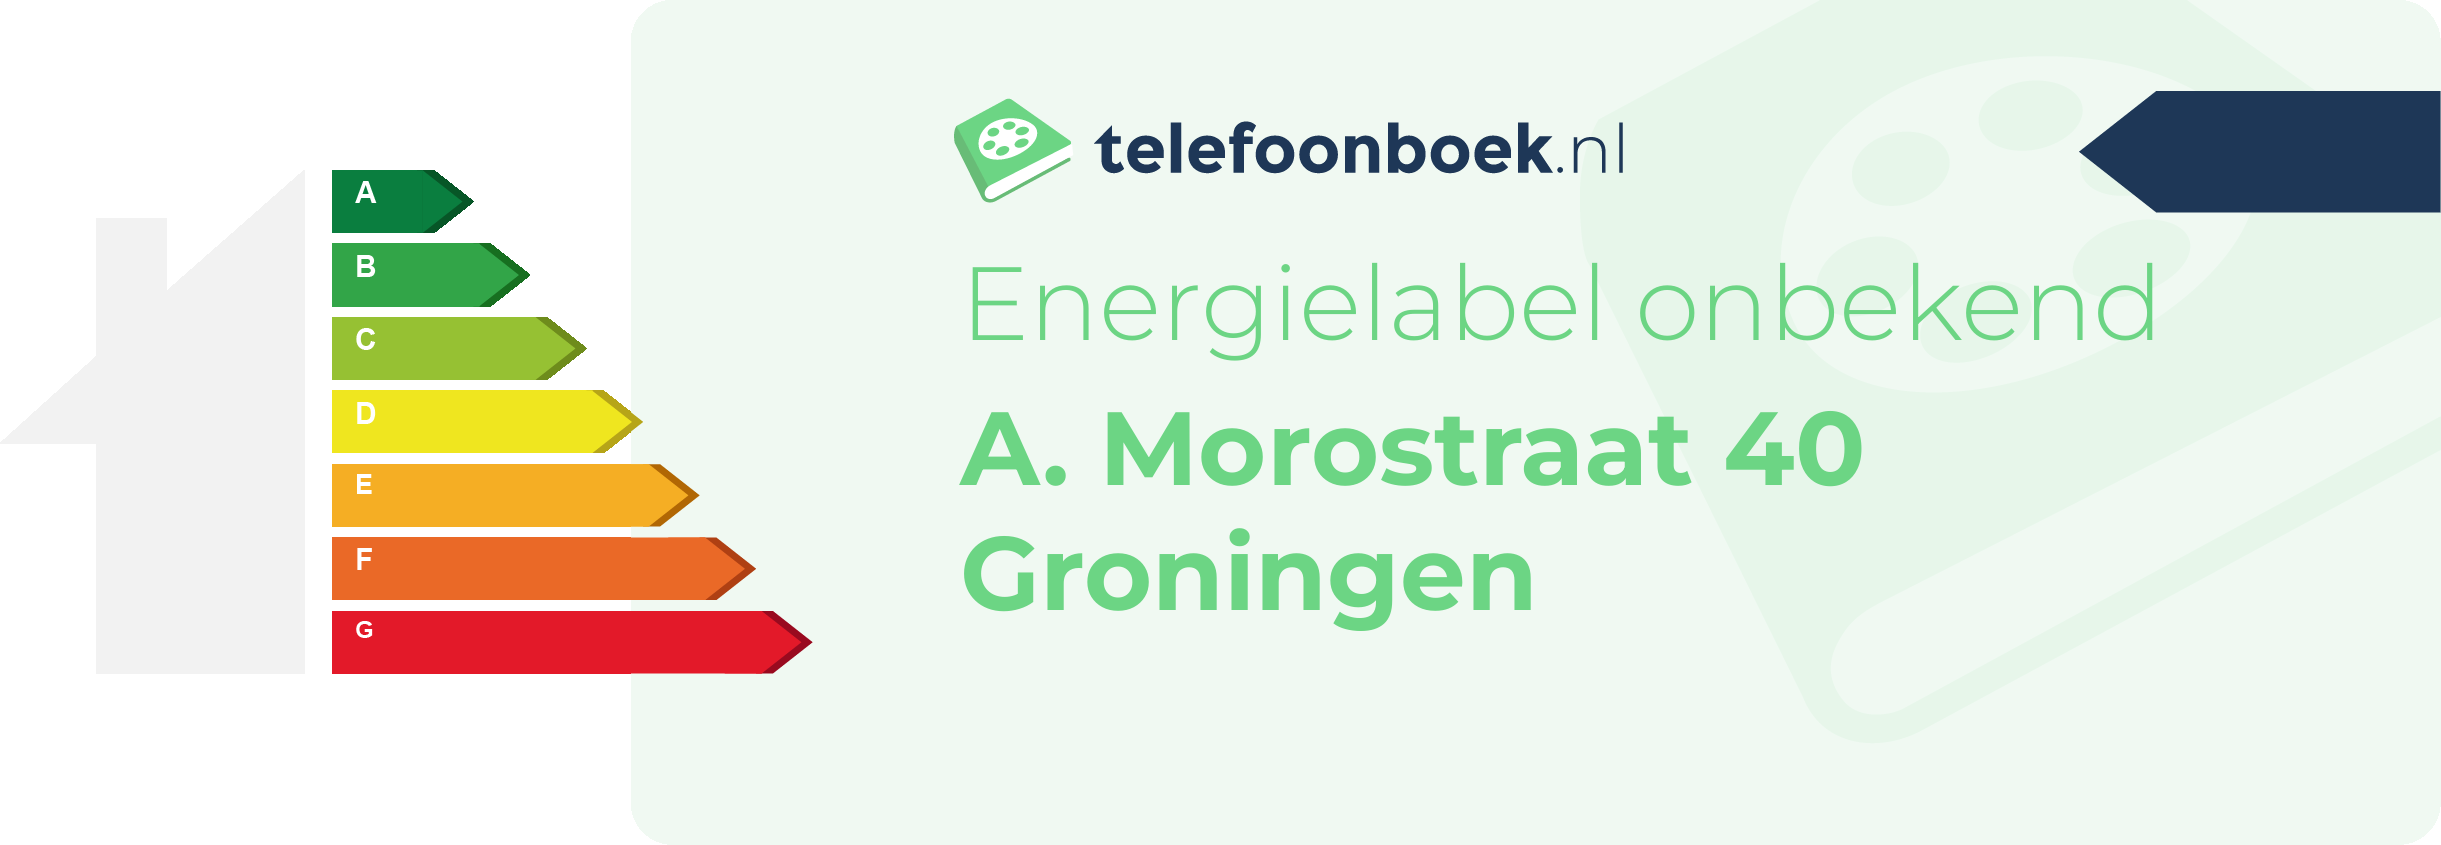 Energielabel A. Morostraat 40 Groningen